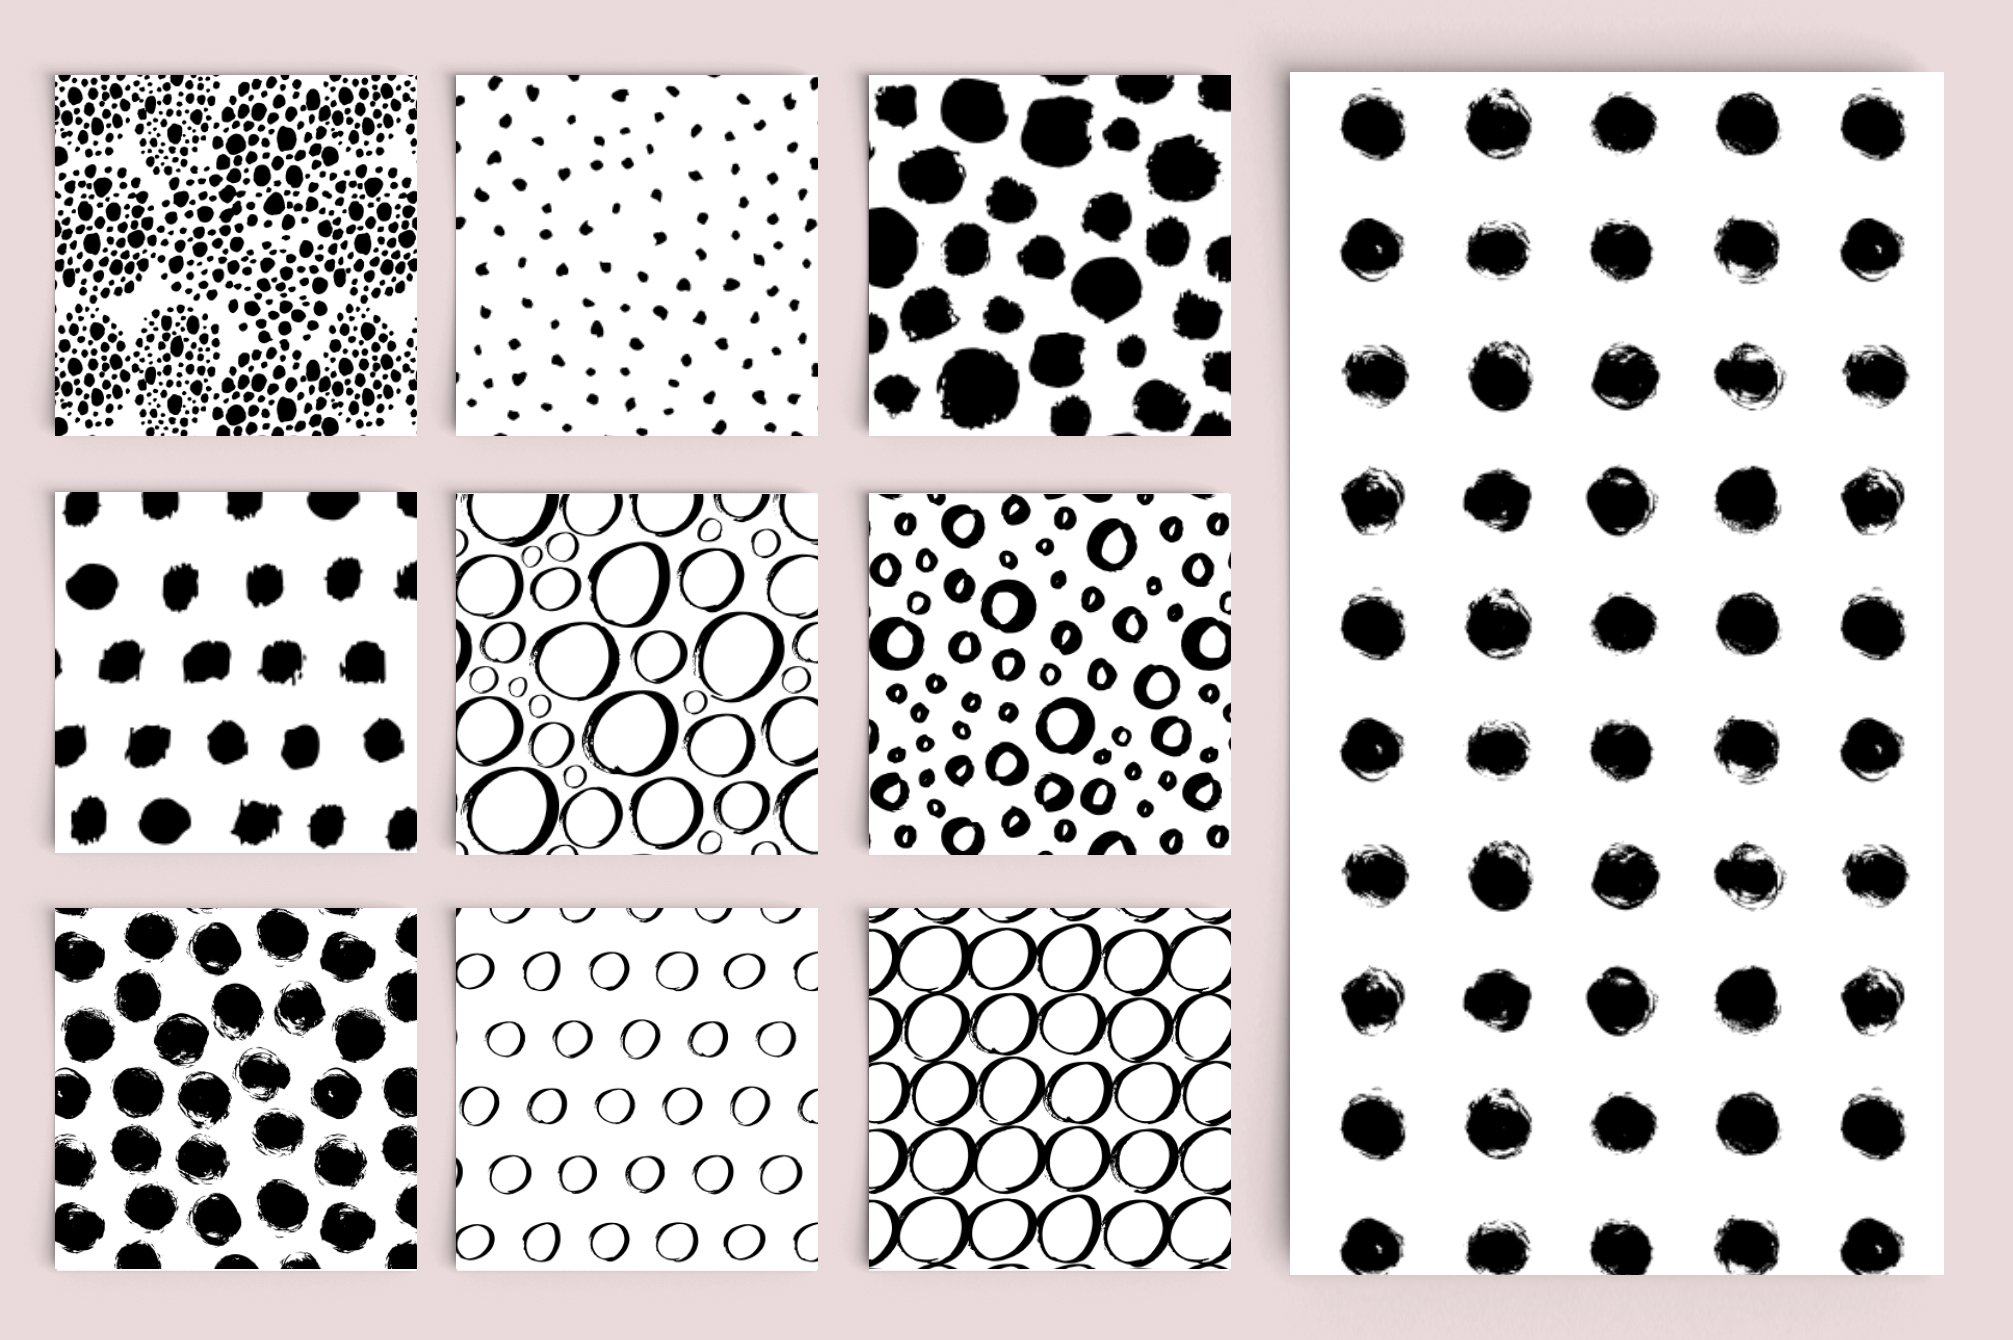 Dots and Circles - 20 Hand Drawn Patterns